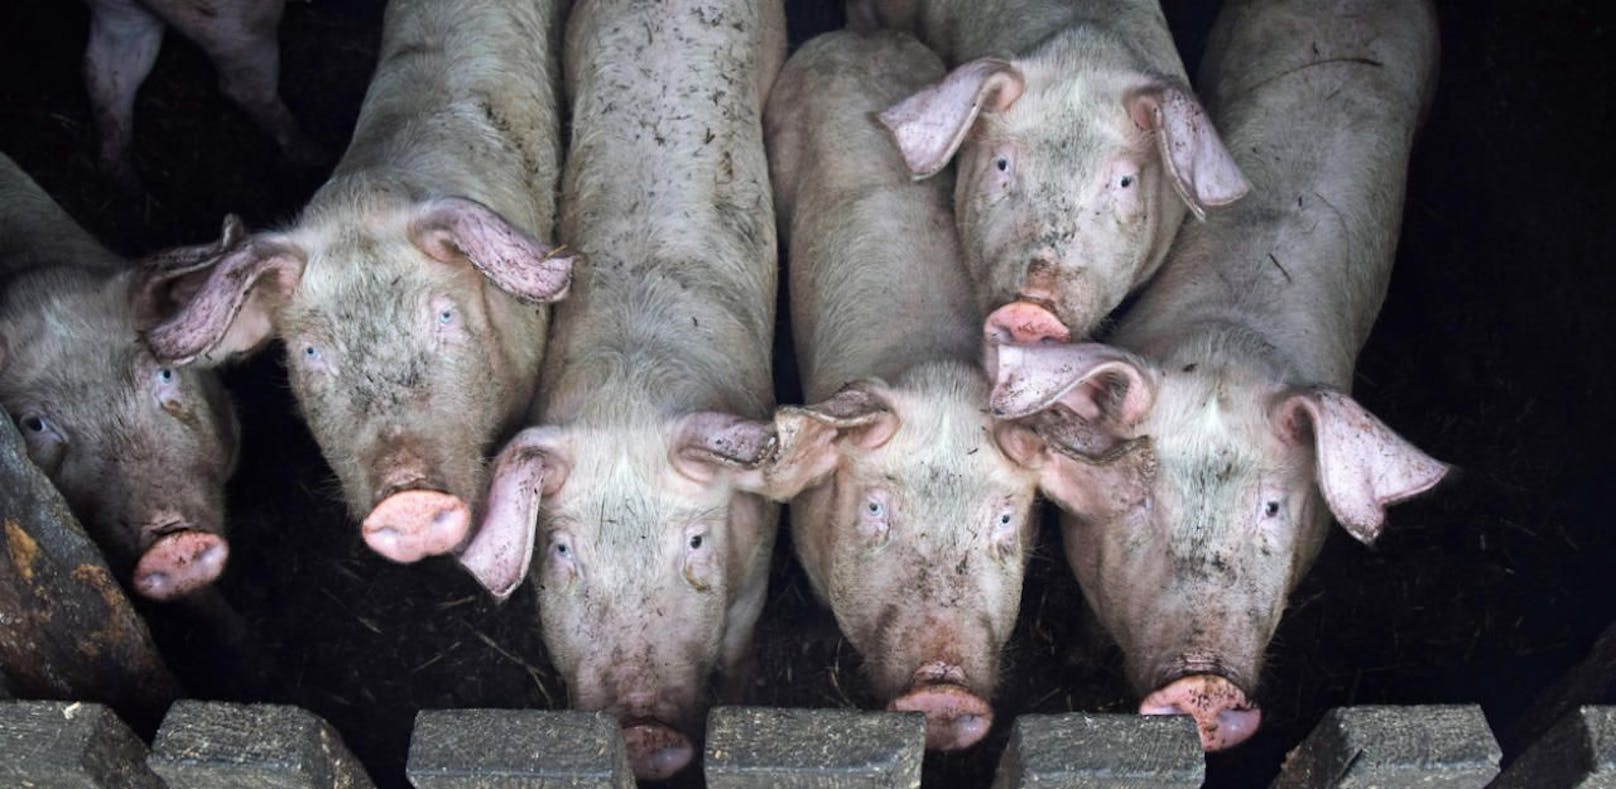 Im Bezirk Gmunden wurden in einem Schweinestall unvorstellbar grausame Zustände entdeckt.